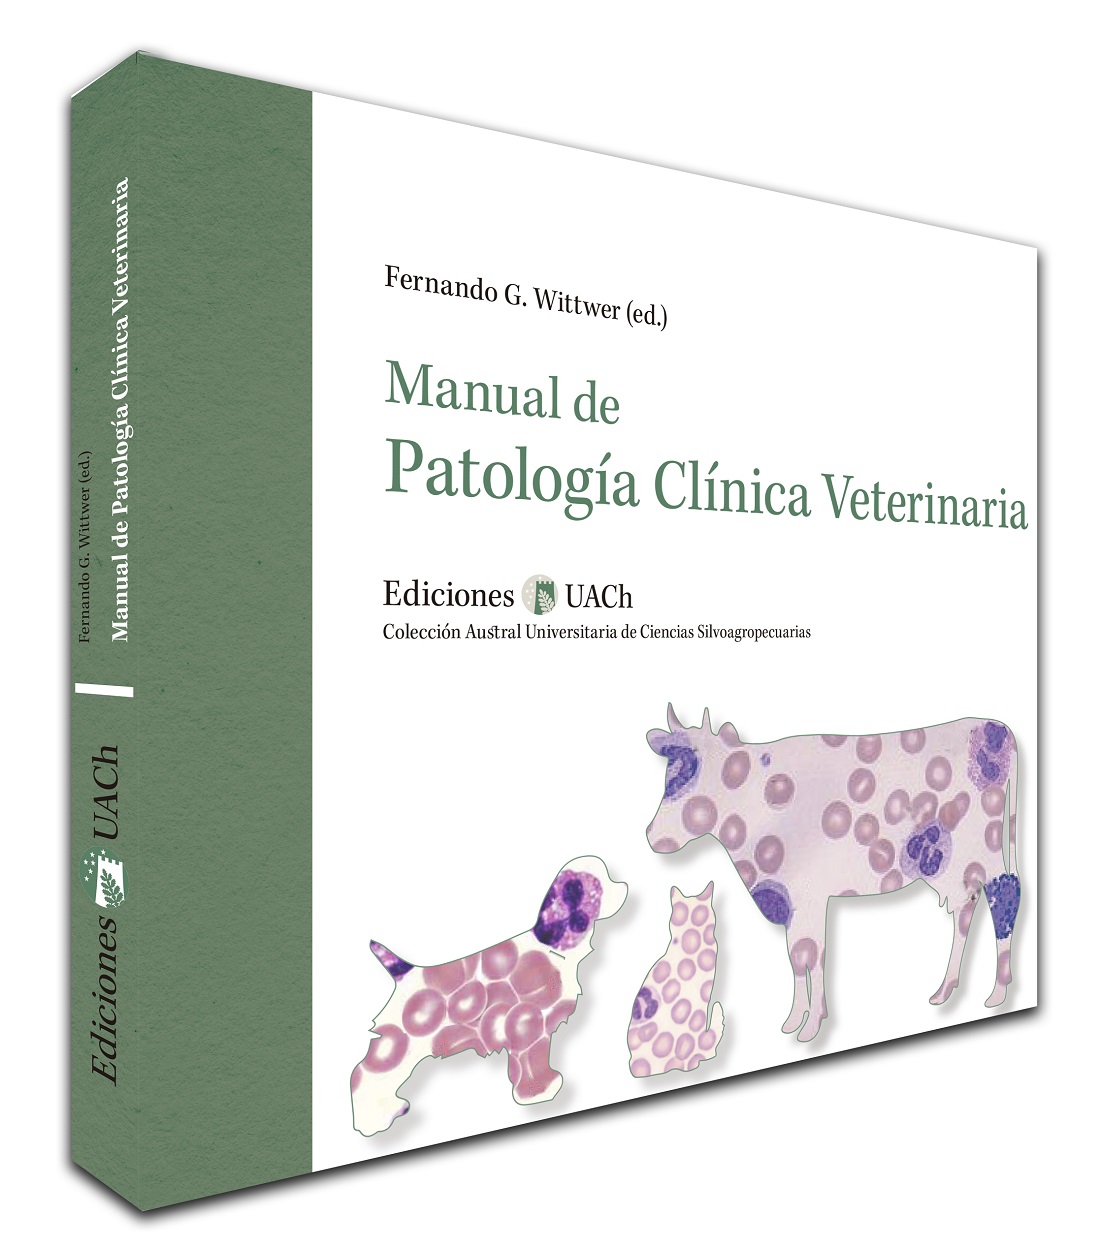 Manual de Patología Clínica Veterinaria actualiza conocimientos | Diario Digital El Calbucano